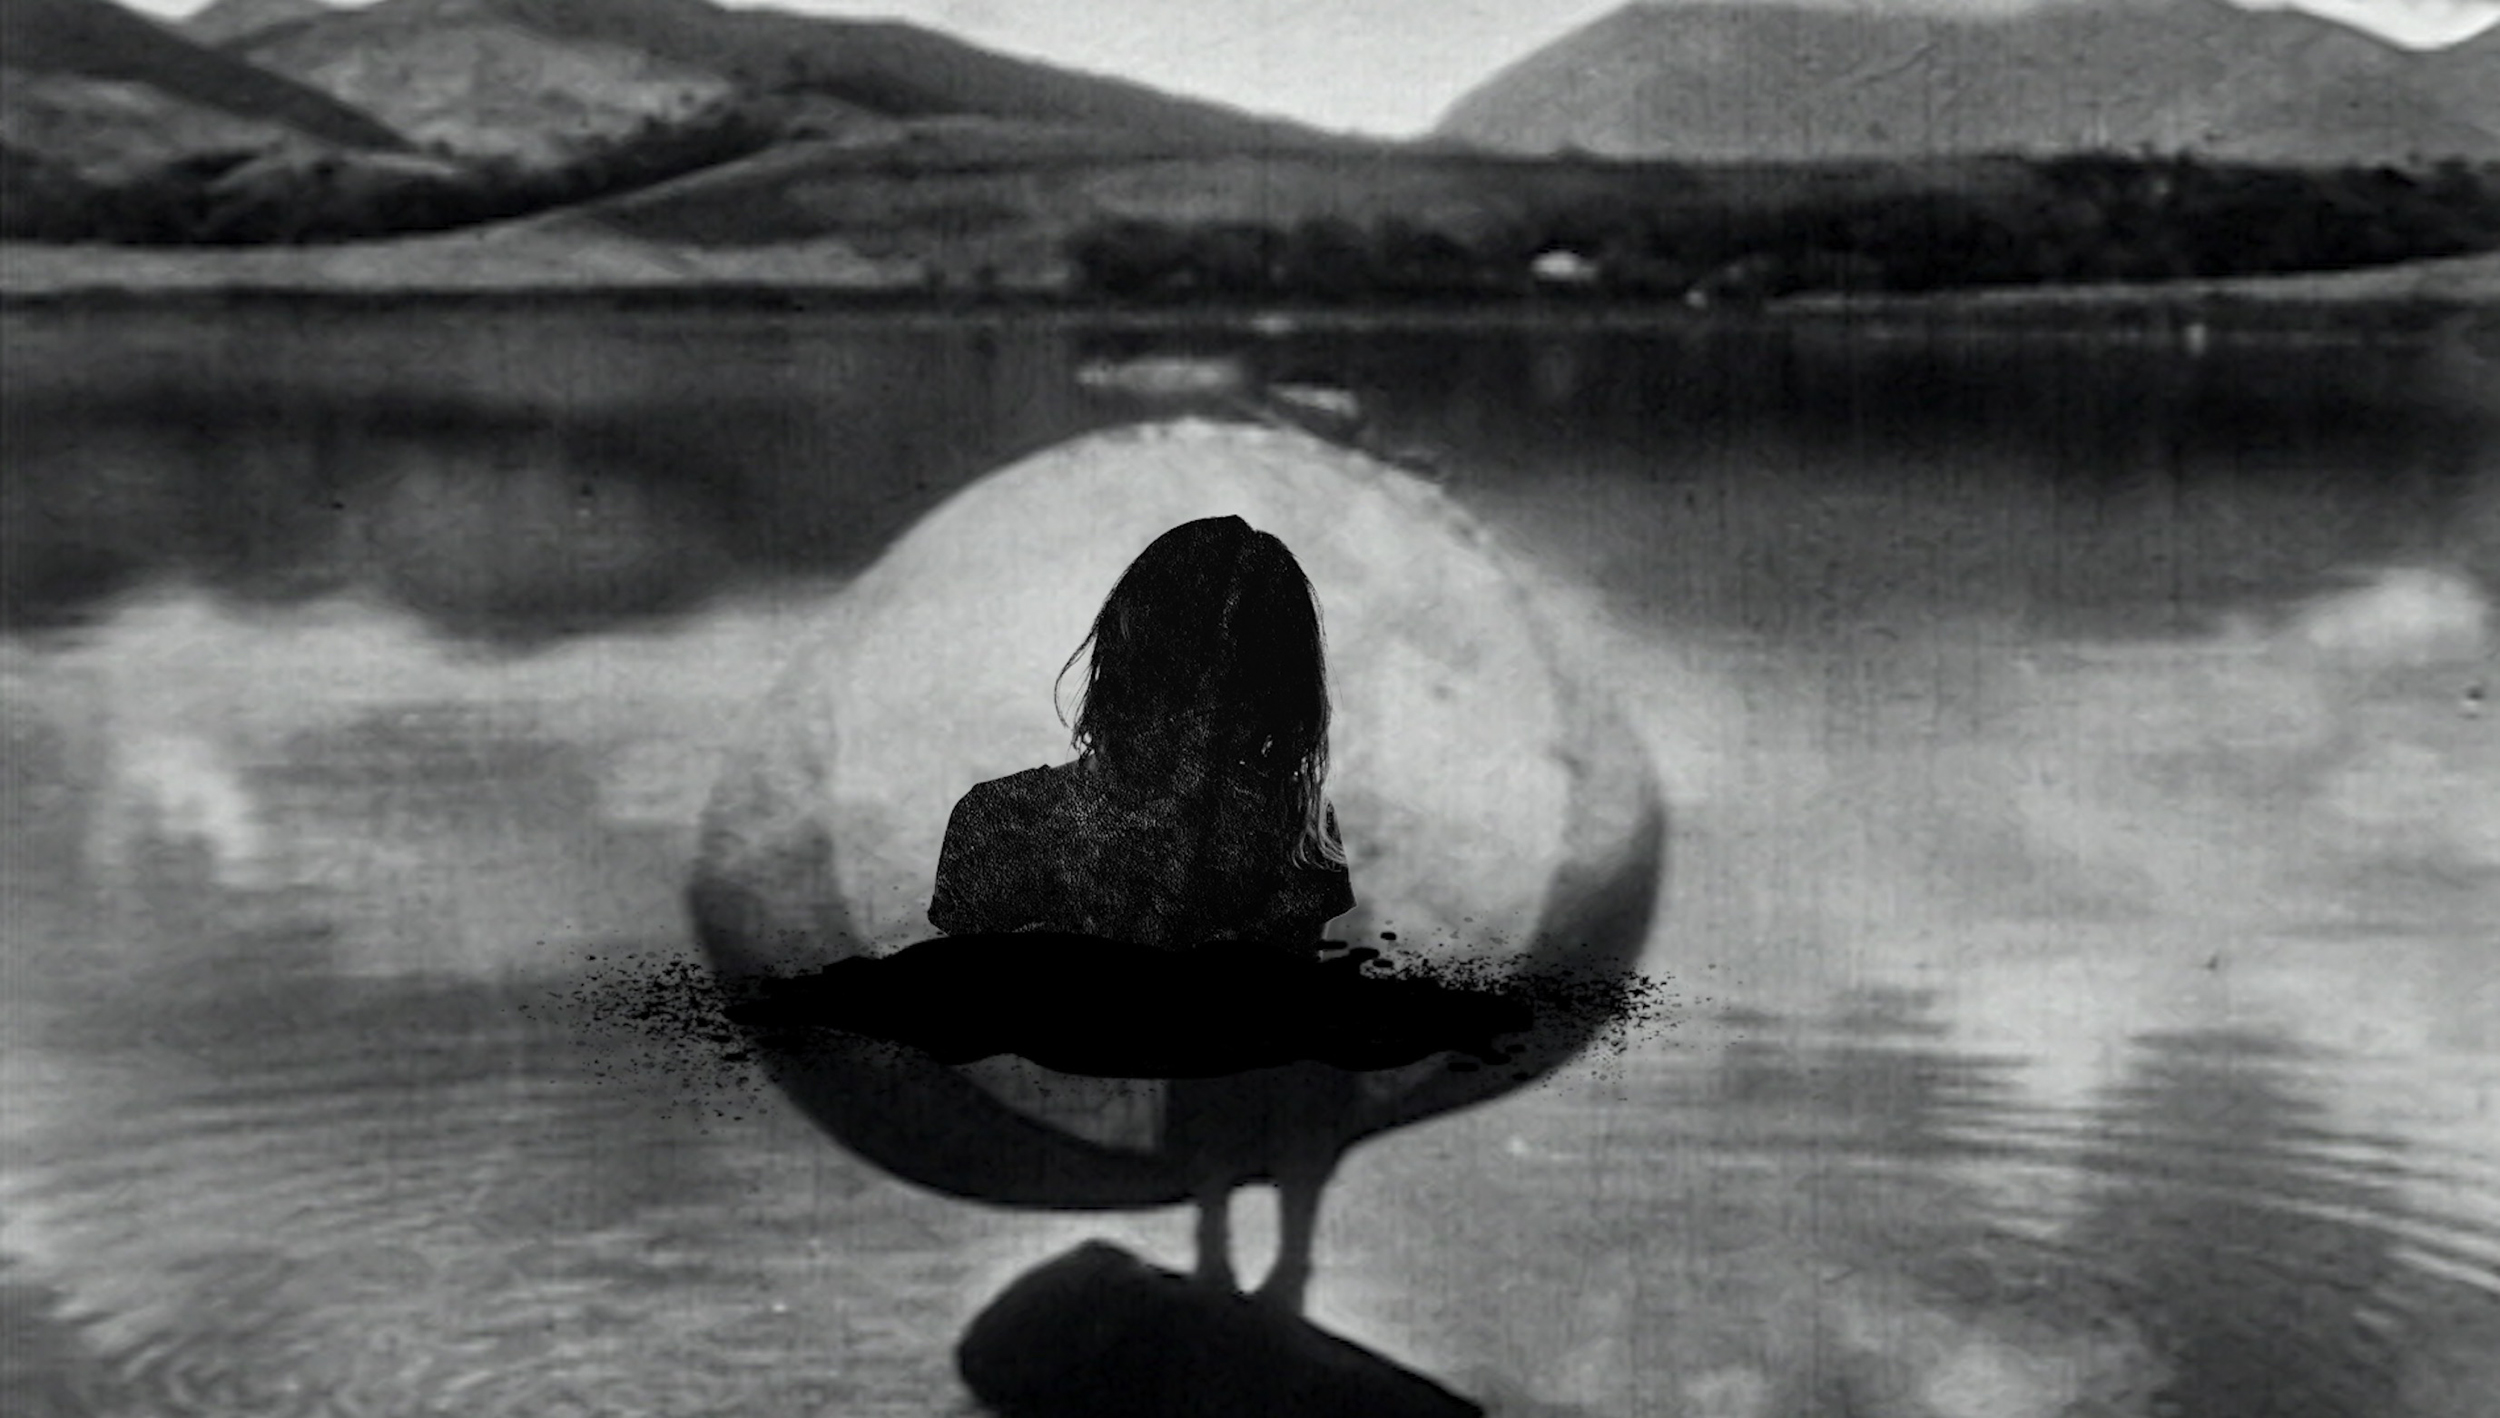 Cause of Death. Ré-Elles. Silouette d'une femme à l'interieur d'une bulle. Au plan arrière, des montagnes et un lac forment un paysage.